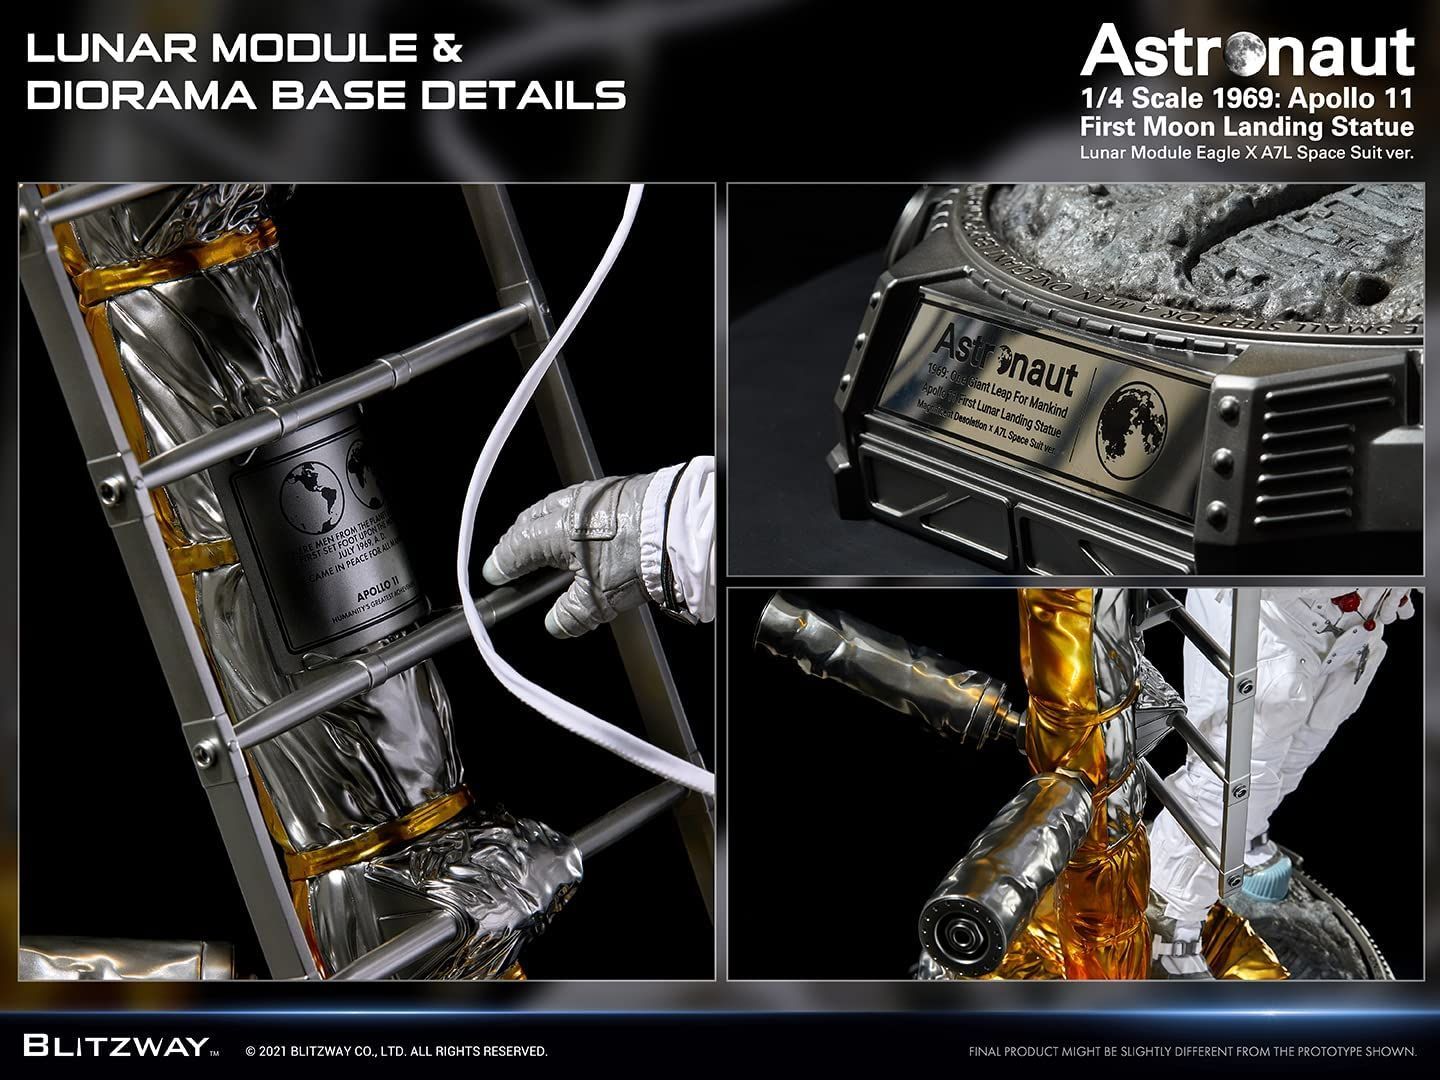 の正規ブリッツウェイ アストロノーツ ISS EMU Ver. スパーブ スケール スタチュー The Real ザ・リアル 宇宙飛行士 一般